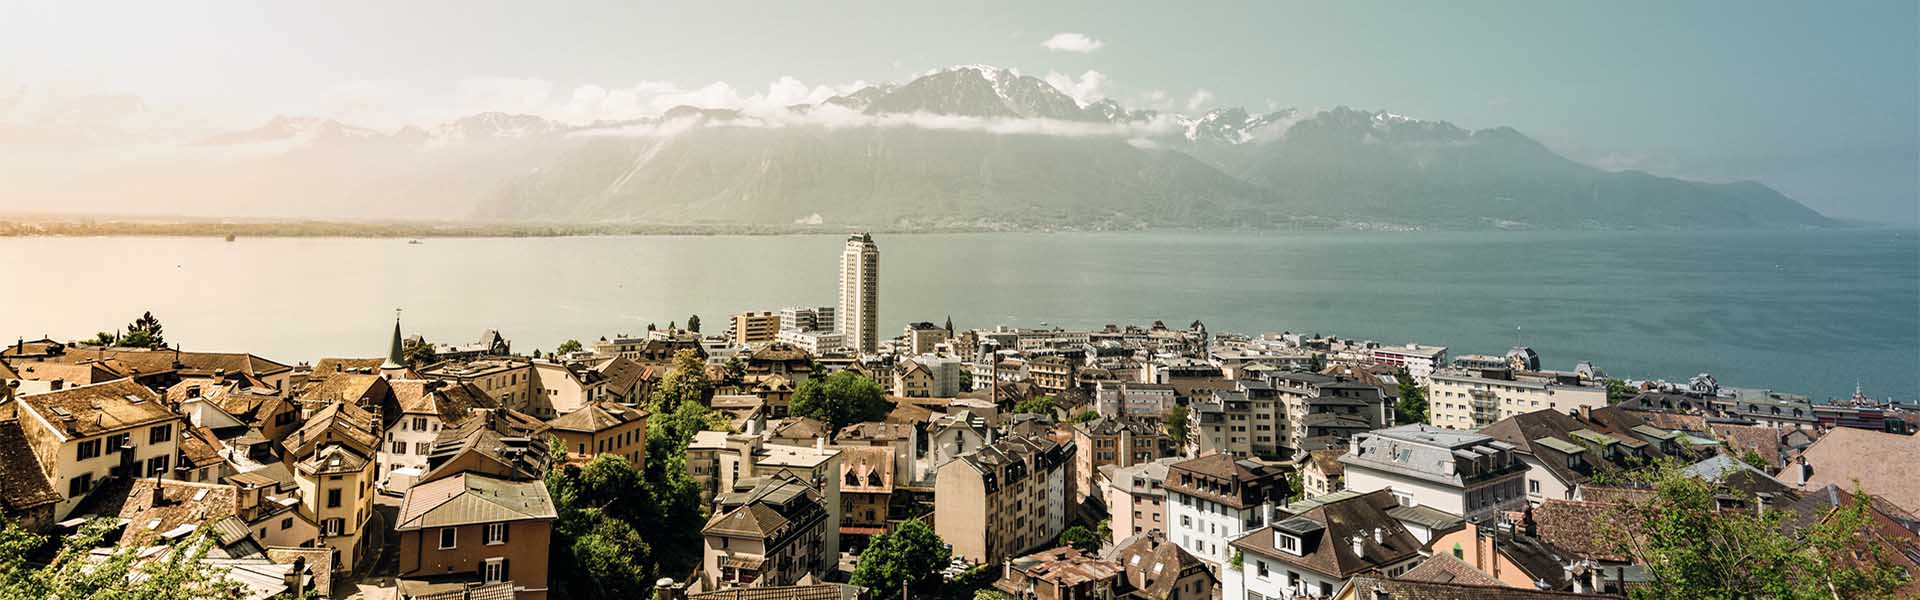 Top Escort Switzerland | Escort Montreux